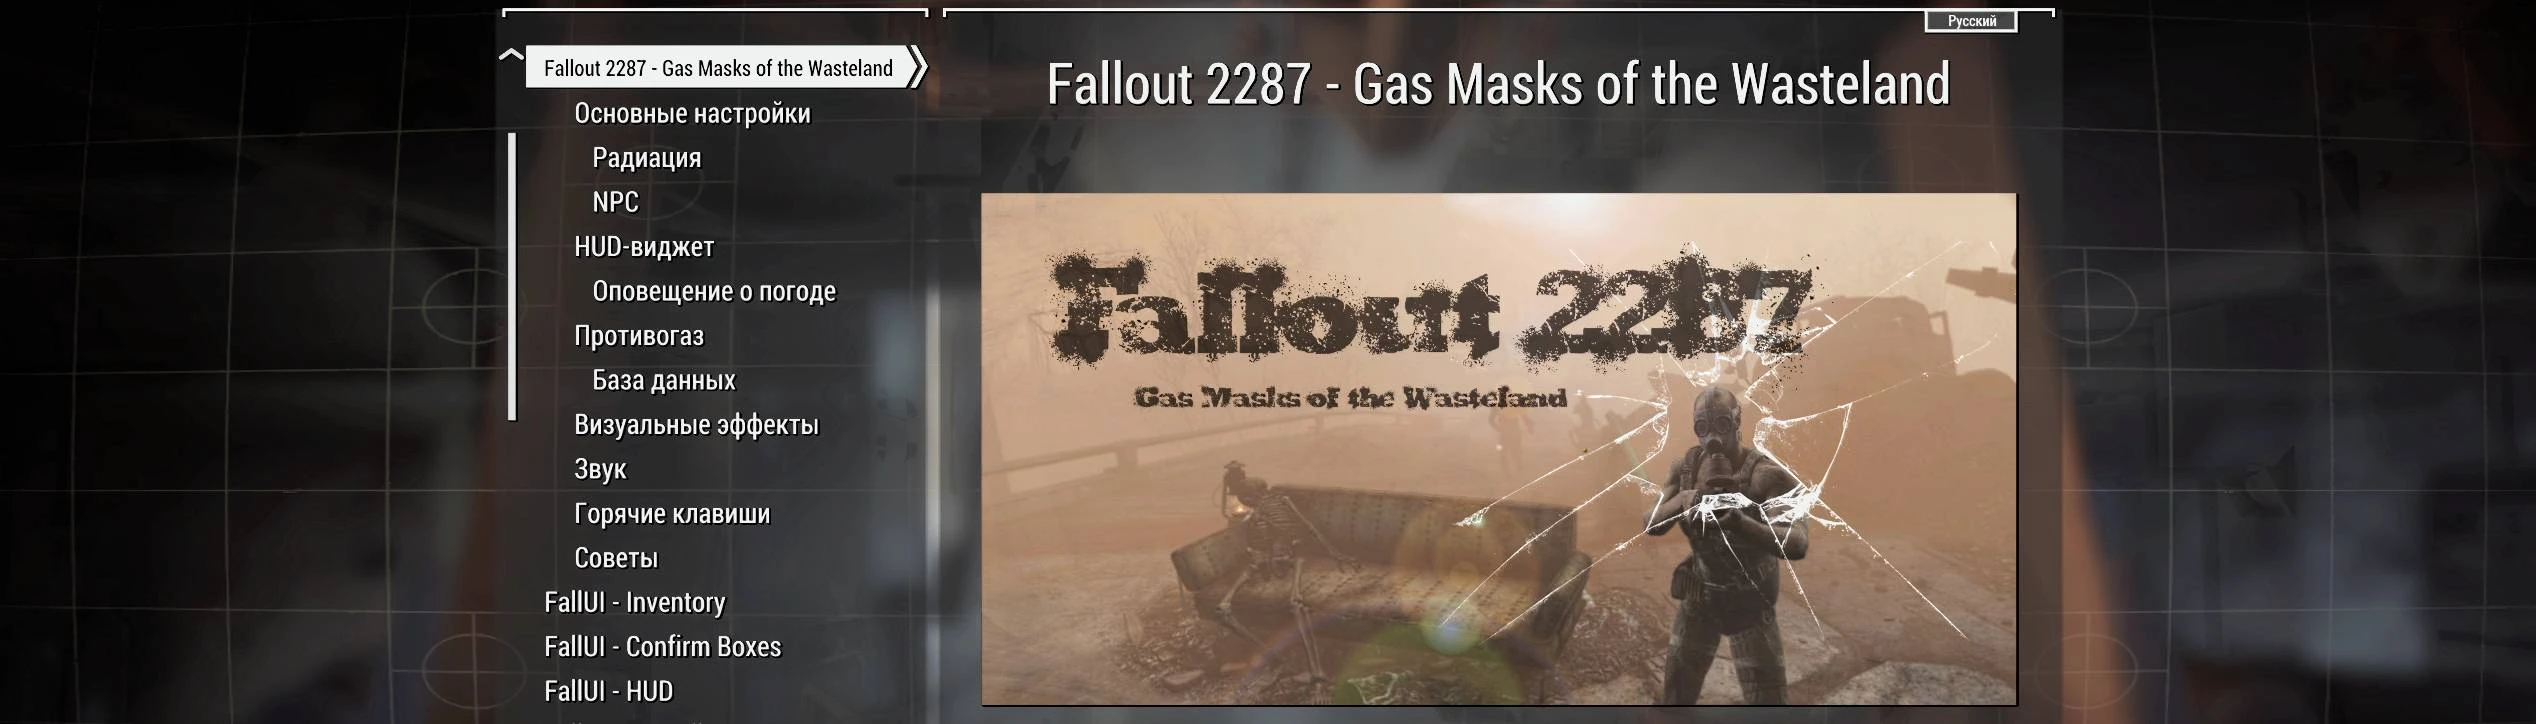 Fallout 4 settings menu фото 25